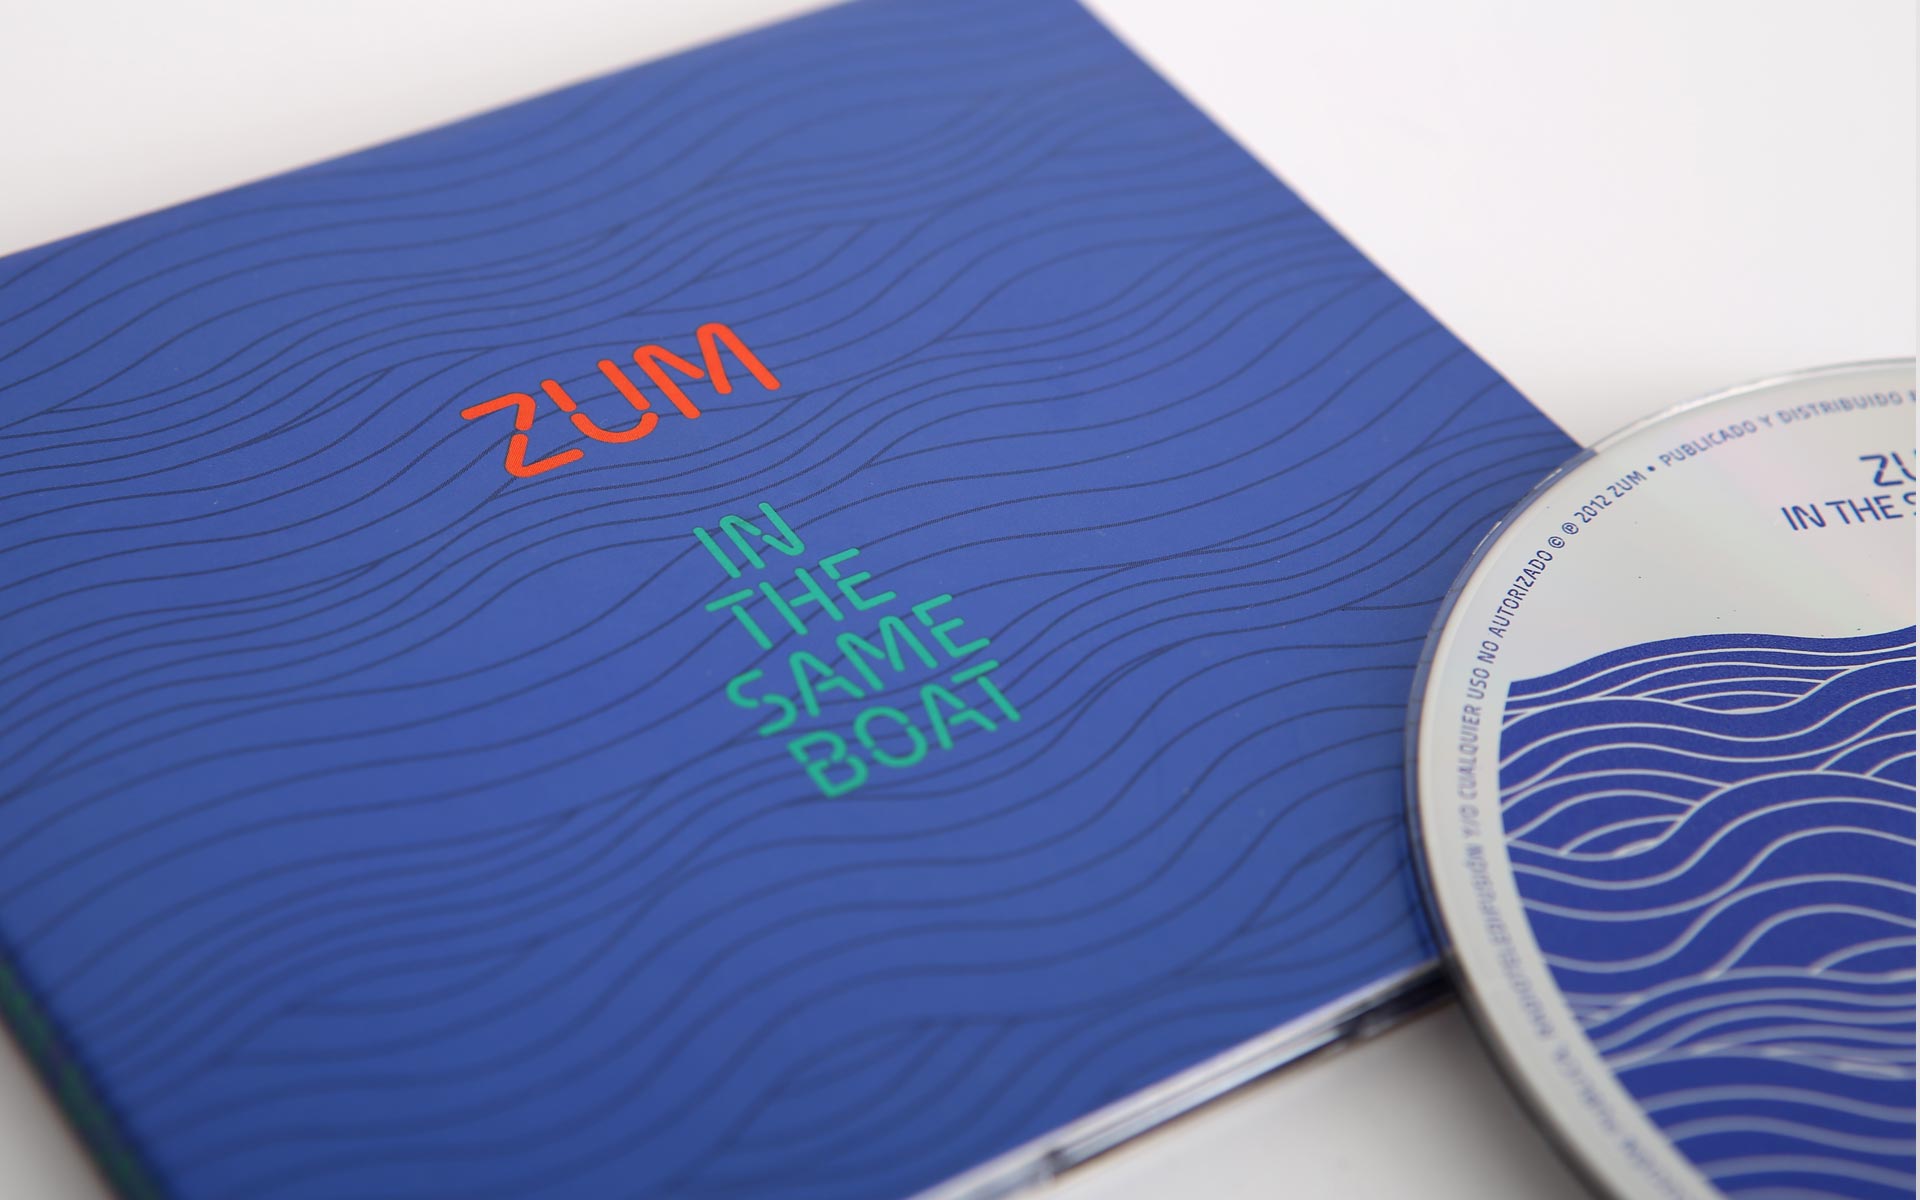 Zum guitar trio, CD cover design with special inks